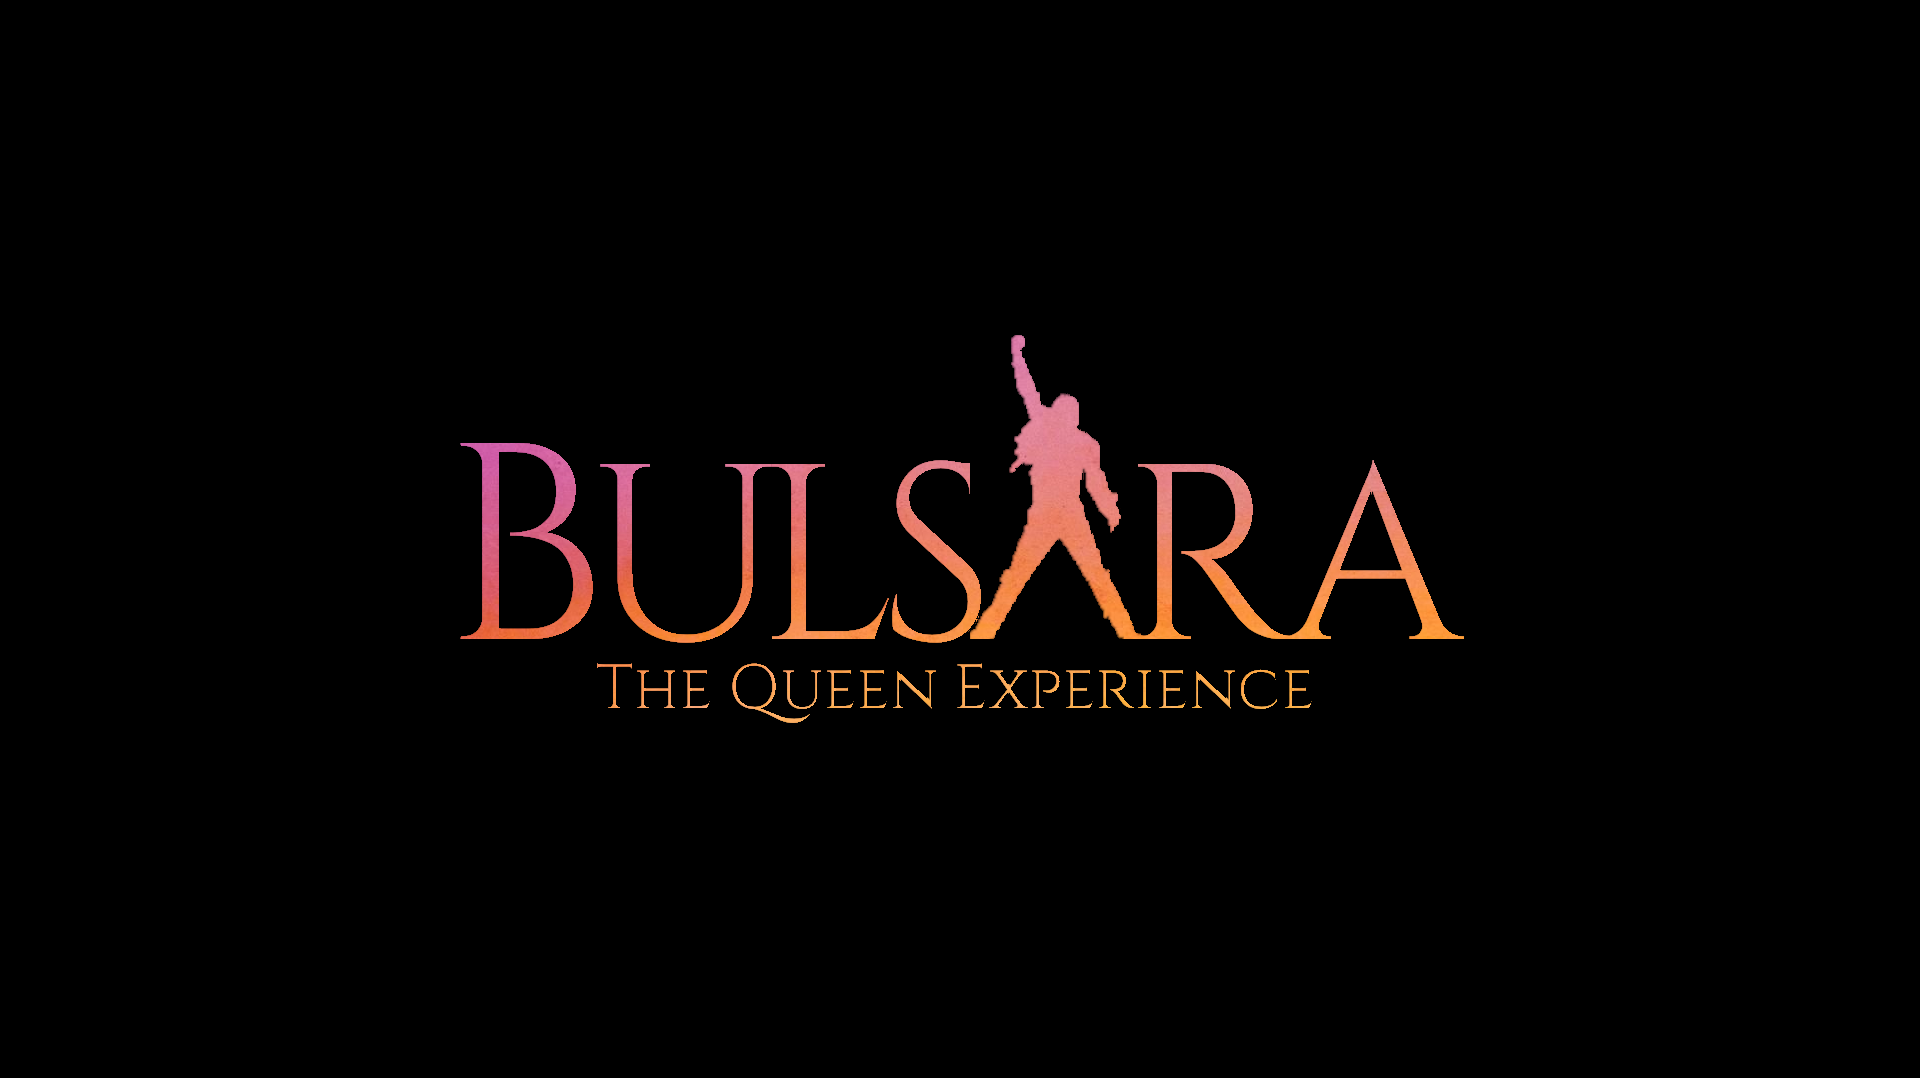 BULSARA, THE QUEEN EXPERIENCIE